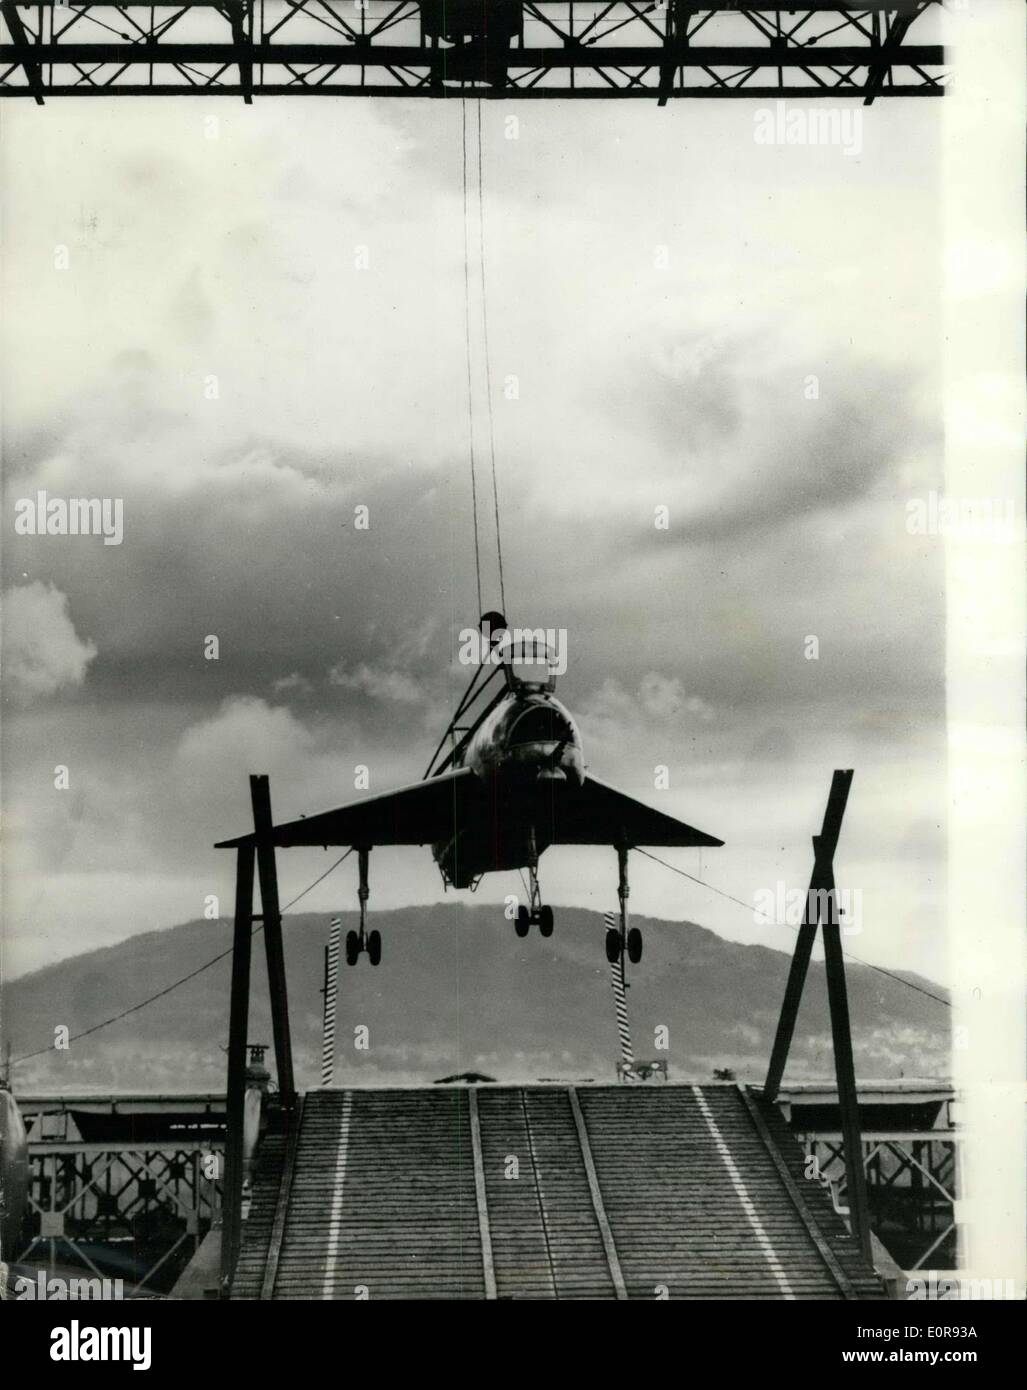 15. August 1958 - The Short S.C. 1 vertikale nehmen aus Flugzeug durchläuft Tests In Belfast: Die kurze SC. 1 V.T.O.L. Forschungsflugzeug strahlgetriebenen vertikale nehmen-der Flugzeug-Projekt hat begonnen untethered schwebende Versuche in seine Test-Portal in Belfast. In den letzten paar Tagen machte die Maschine Acme 20 Starts bis zu einer Höhe von mehreren Fest und hat schwebte, und landete unter Kontrolle. Die Firma Cheftestpilot Mr T. Brooke-Smith war an den Reglern. Das Flugzeug steigt und steigt ganz unter der Macht von seiner vertikalen Lift - und das Kabelsystem ist in keiner Weise helfen, es Stockfoto